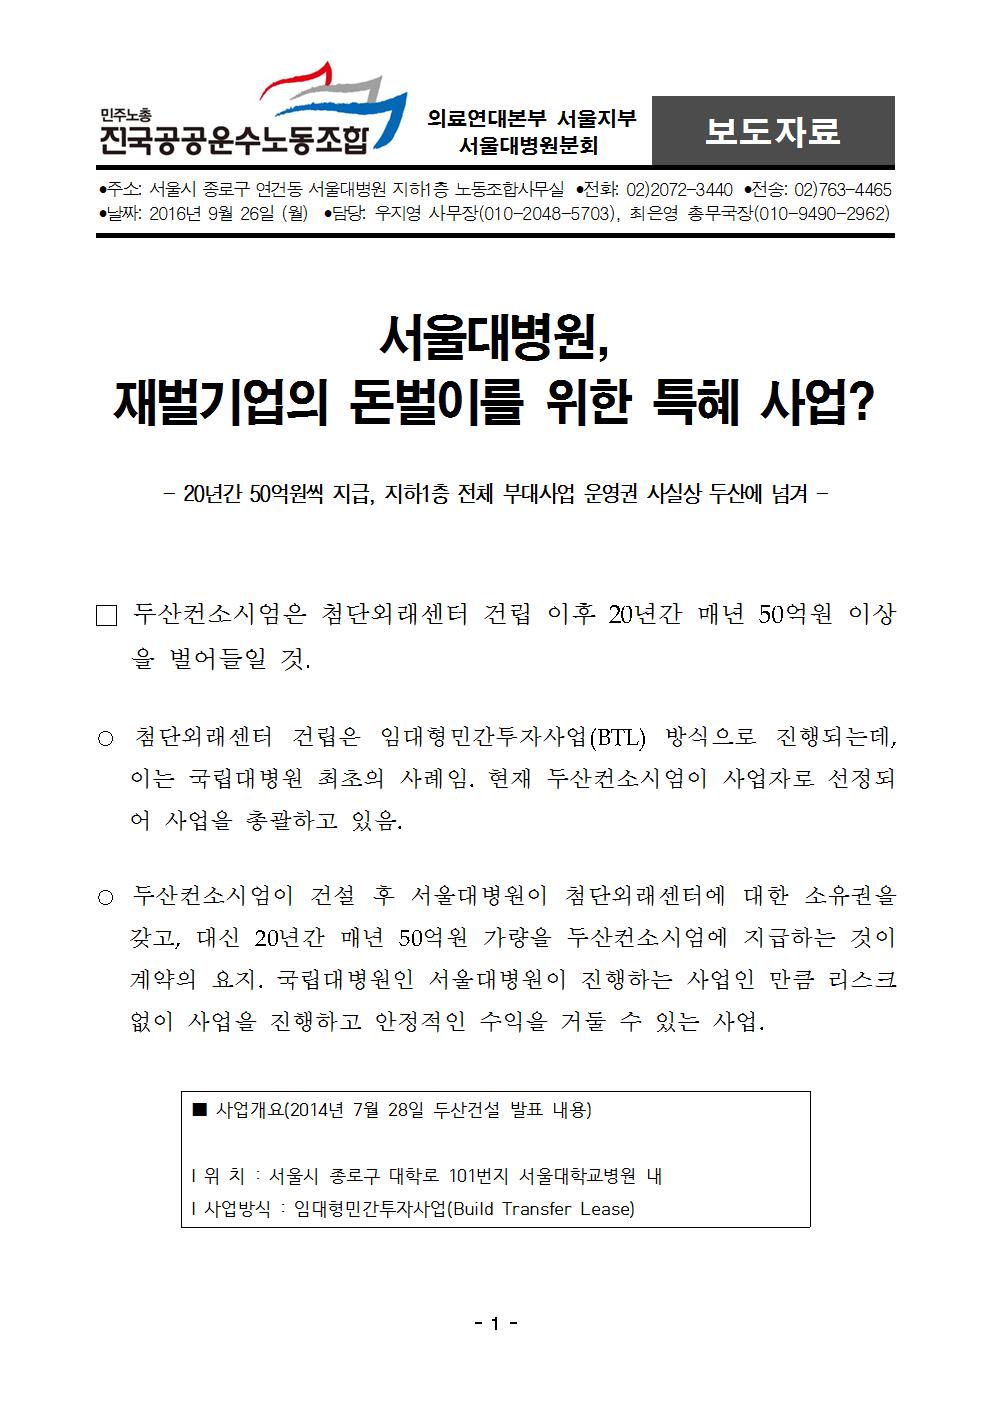 [보도자료] 서울대병원, 재벌기업의 돈벌이를 위한 특혜 사업 (0926 배포)001.jpg